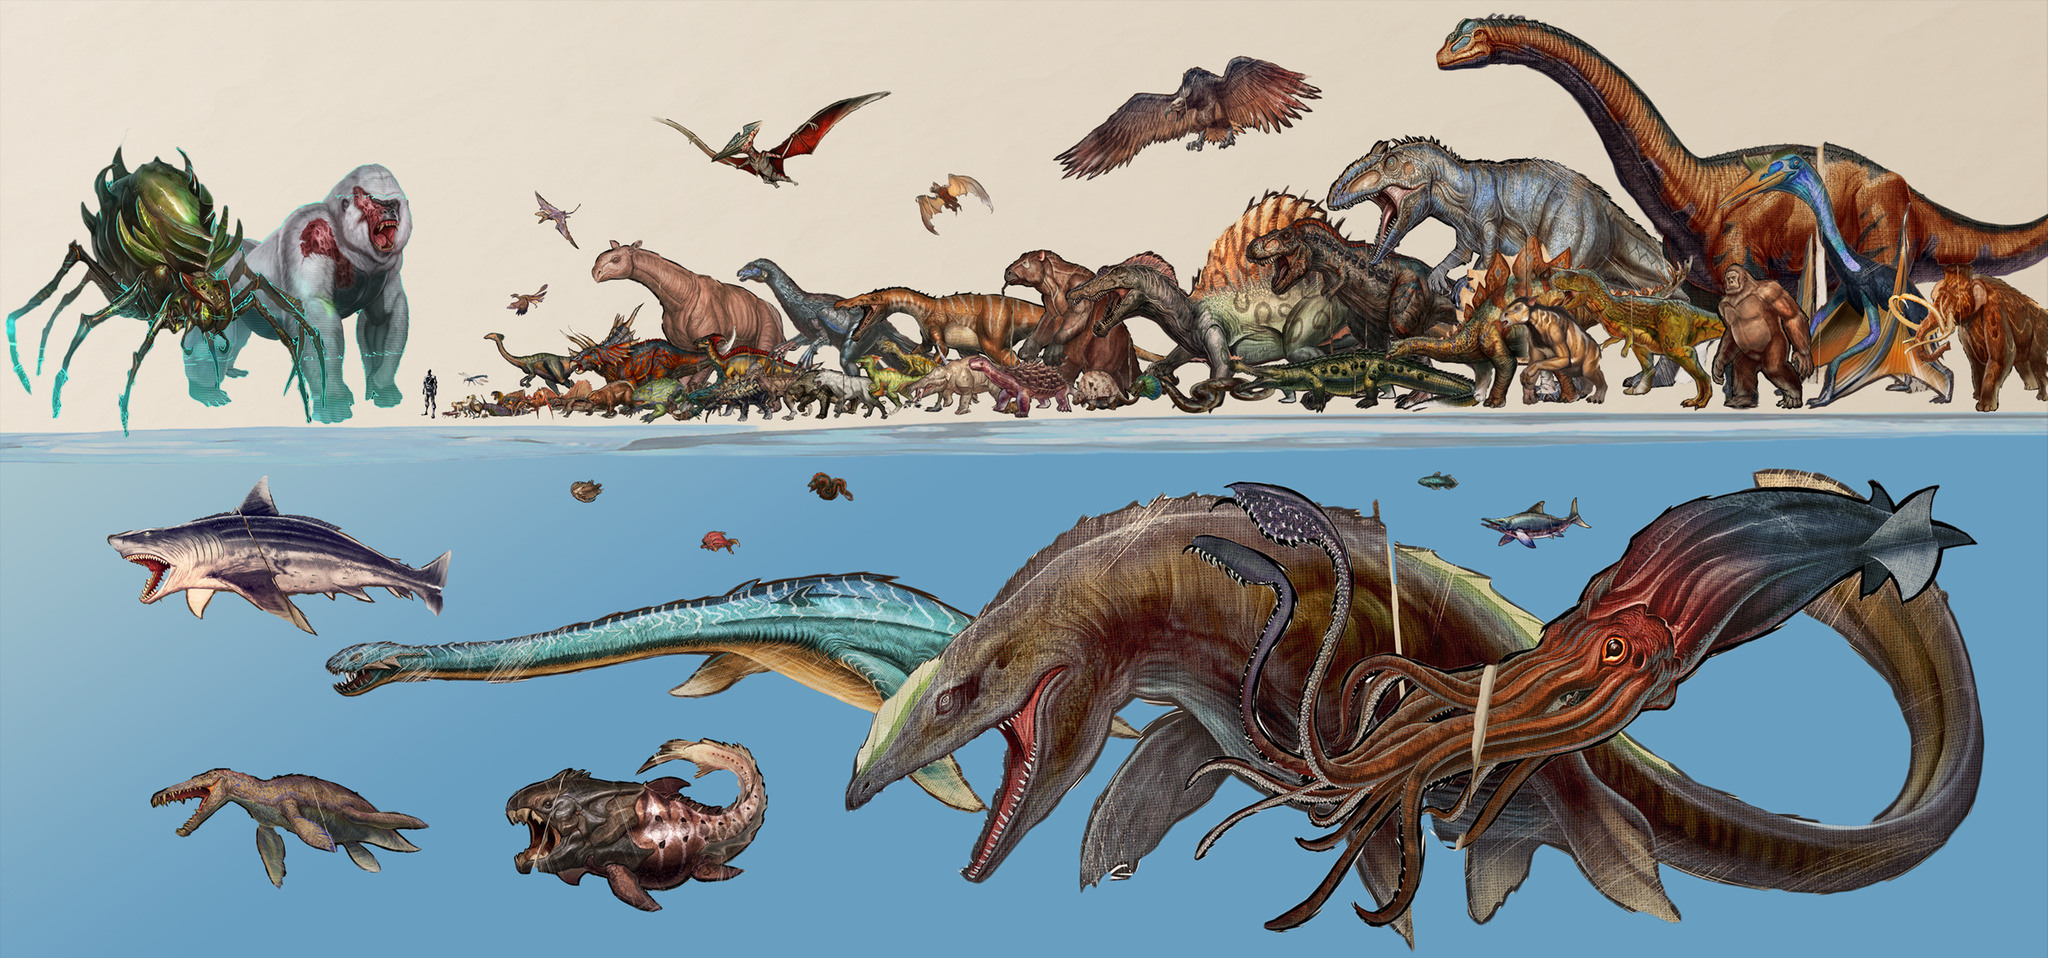 ark survival evolved bases on dinosaurs